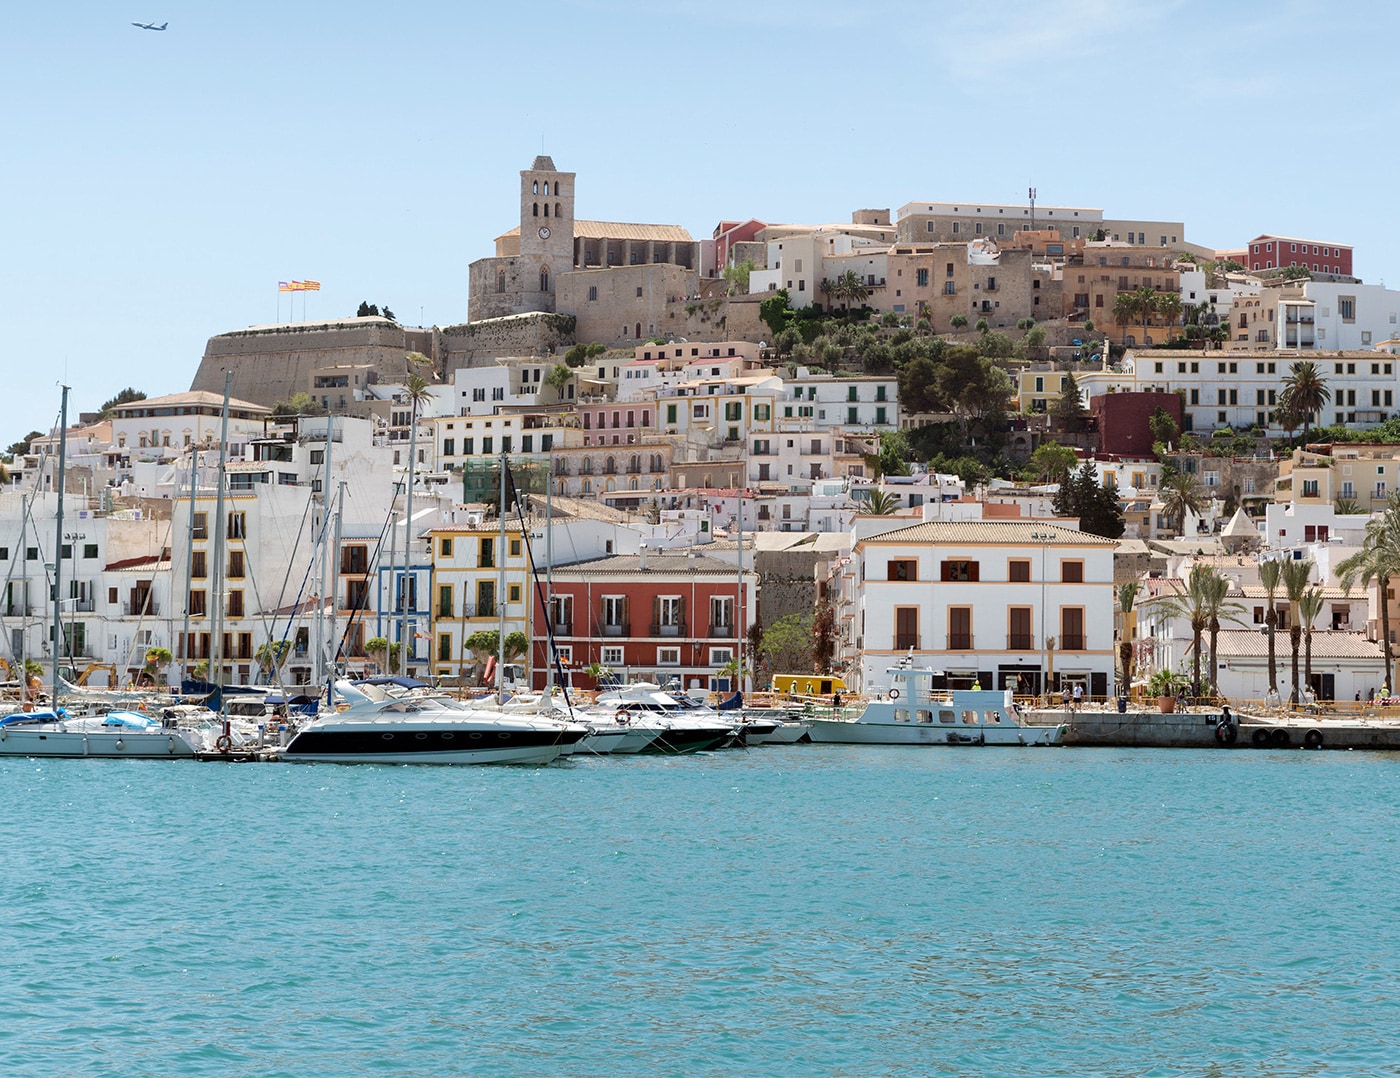 Vista de la ciudad de Ibiza desde el mar con su casco histórico Dalt Vila en la cima de la colina